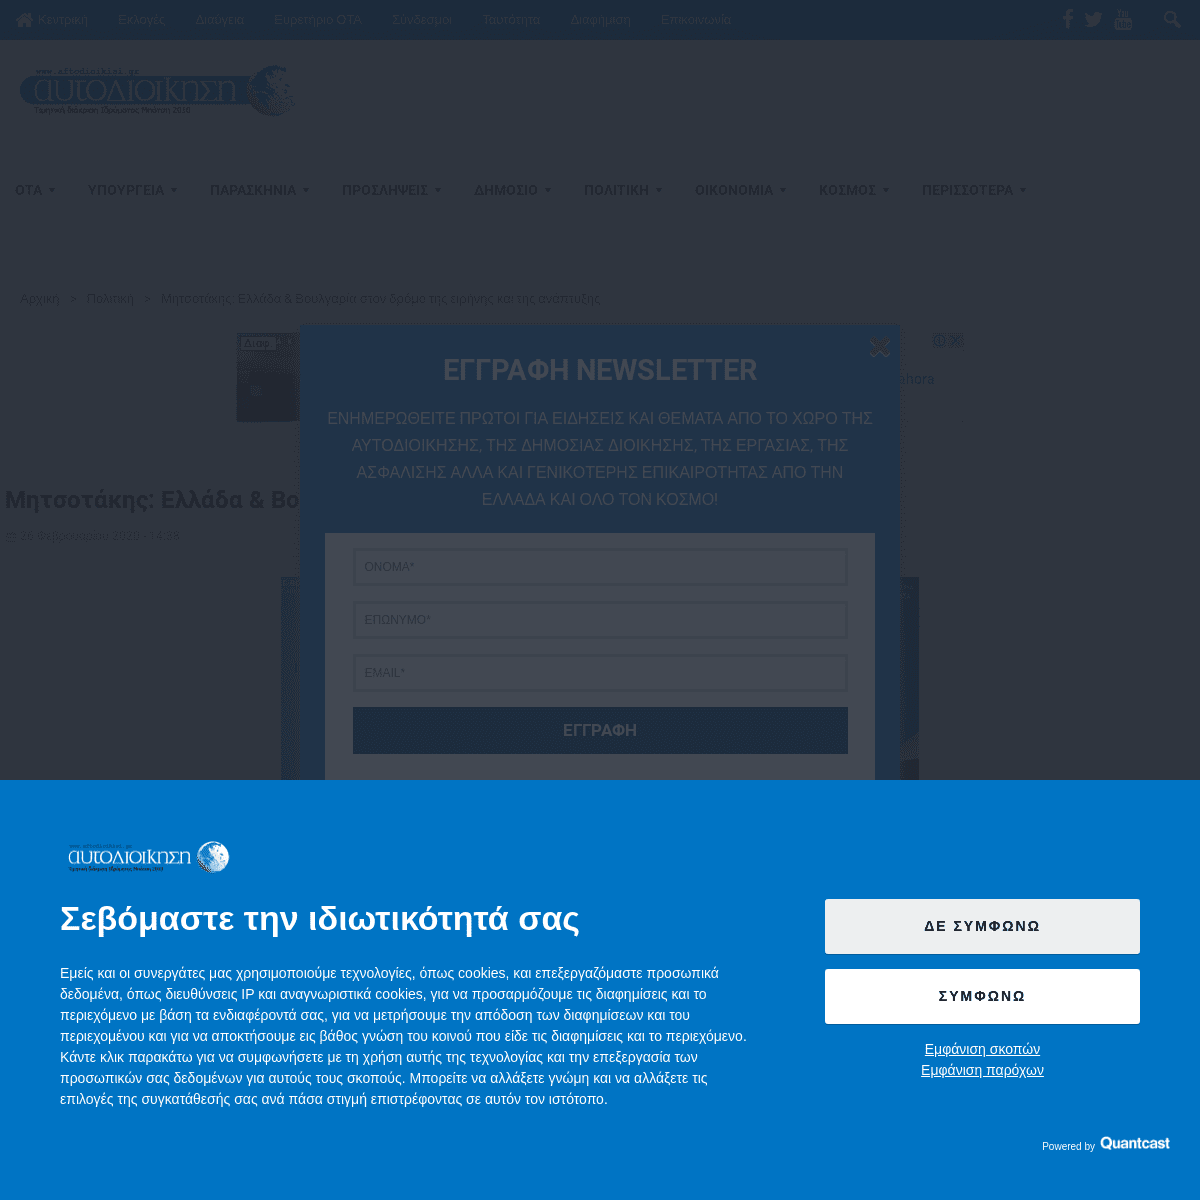 A complete backup of www.aftodioikisi.gr/politiki/mitsotakis-ellada-amp-voylgaria-ston-dromo-tis-eirinis-kai-tis-anaptyxis/